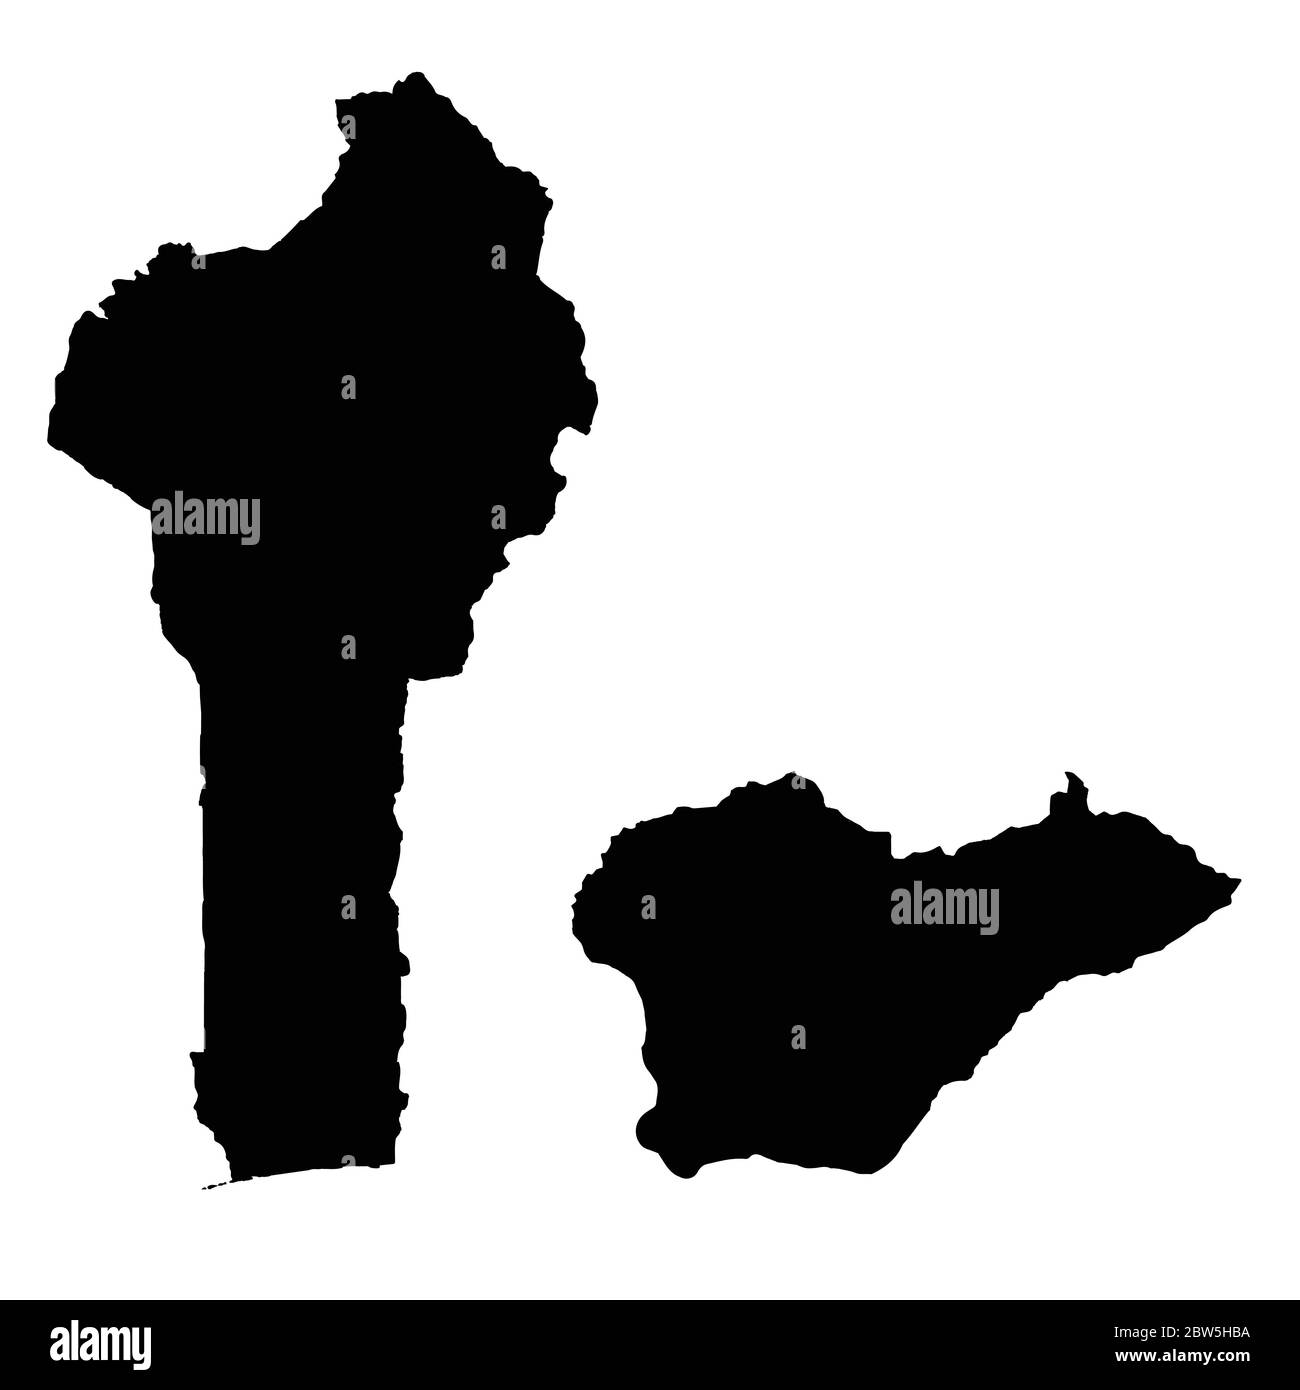 Vektorkarte Benin und Porto Novo. Land und Hauptstadt. Isolierte Vektorgrafik. Schwarz auf weißem Hintergrund. EPS 10-Abbildung. Stock Vektor